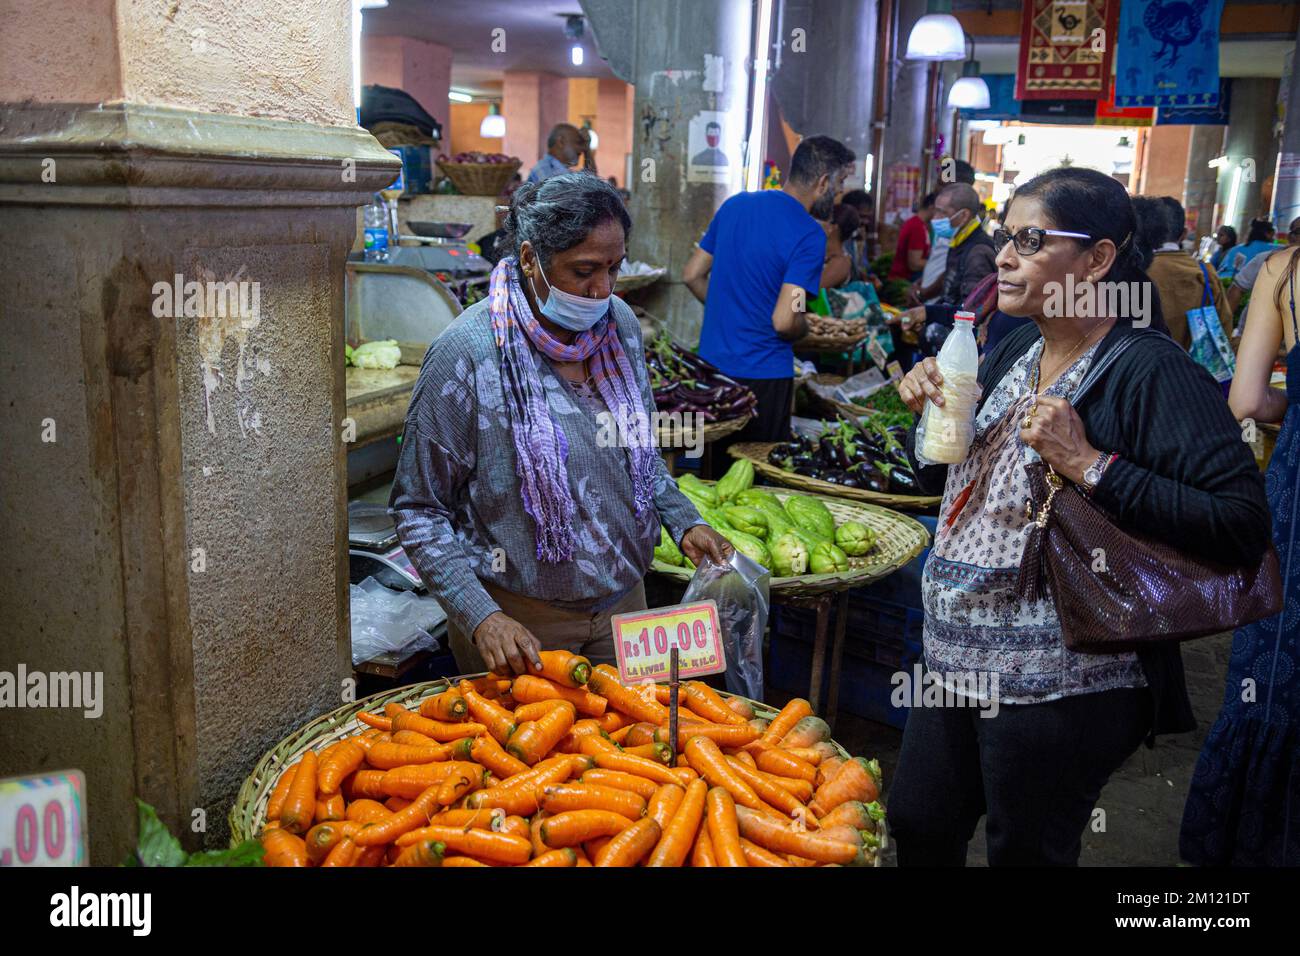 Central Market auf Mauritius Island, Afrika: Dieser belebte Markt unter freiem Himmel bietet eine Vielzahl von Waren zum Verkauf, einschließlich Obst, Kräutern, Gewürzen und Stockfoto